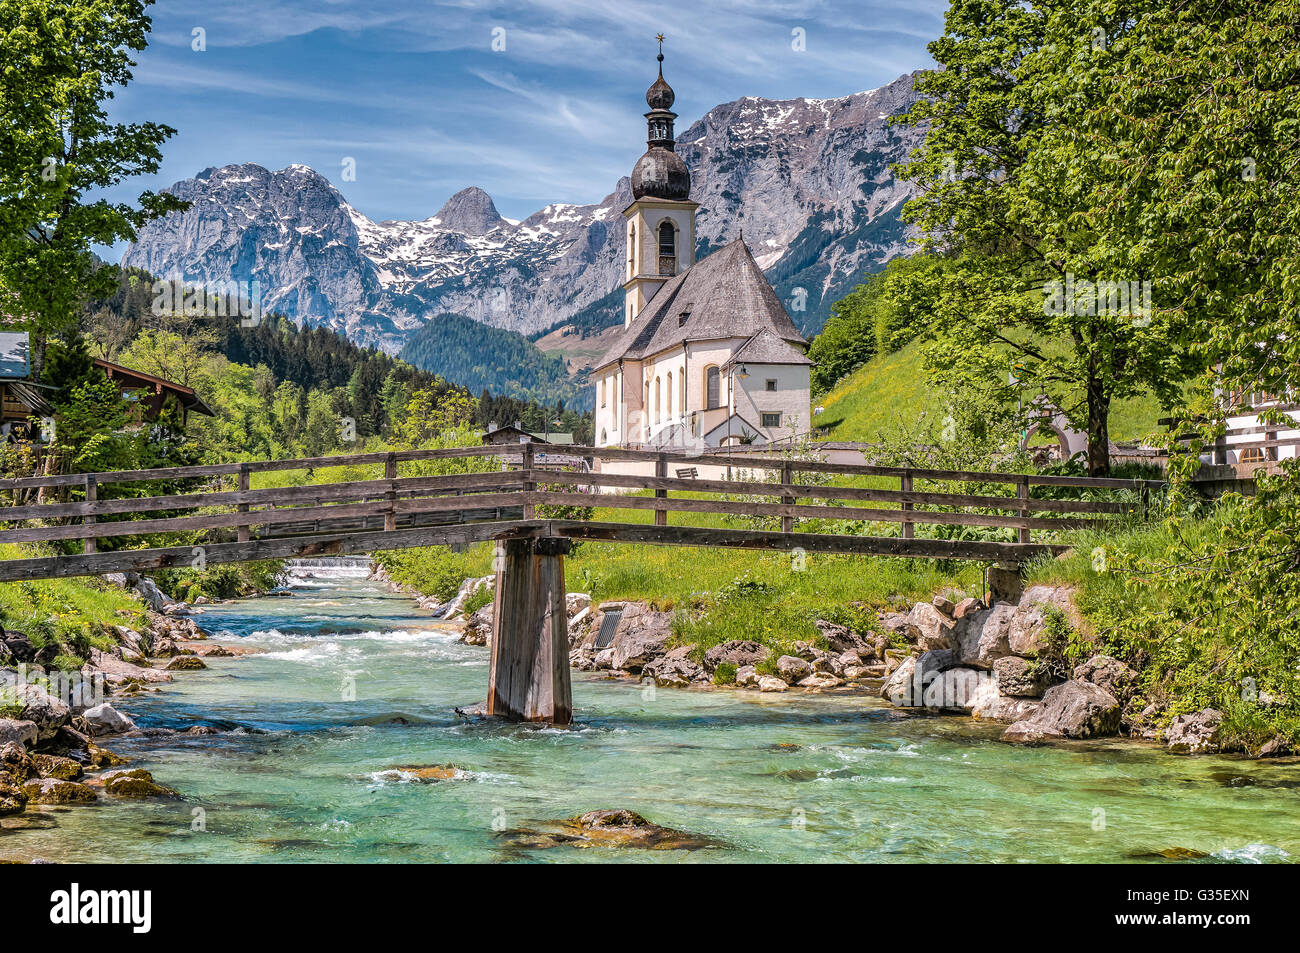 Malerische Berglandschaft in den Alpen mit berühmten Pfarrei Kirche St. Sebastian in der Ortschaft Ramsau, Bayern, Deutschland Stockfoto